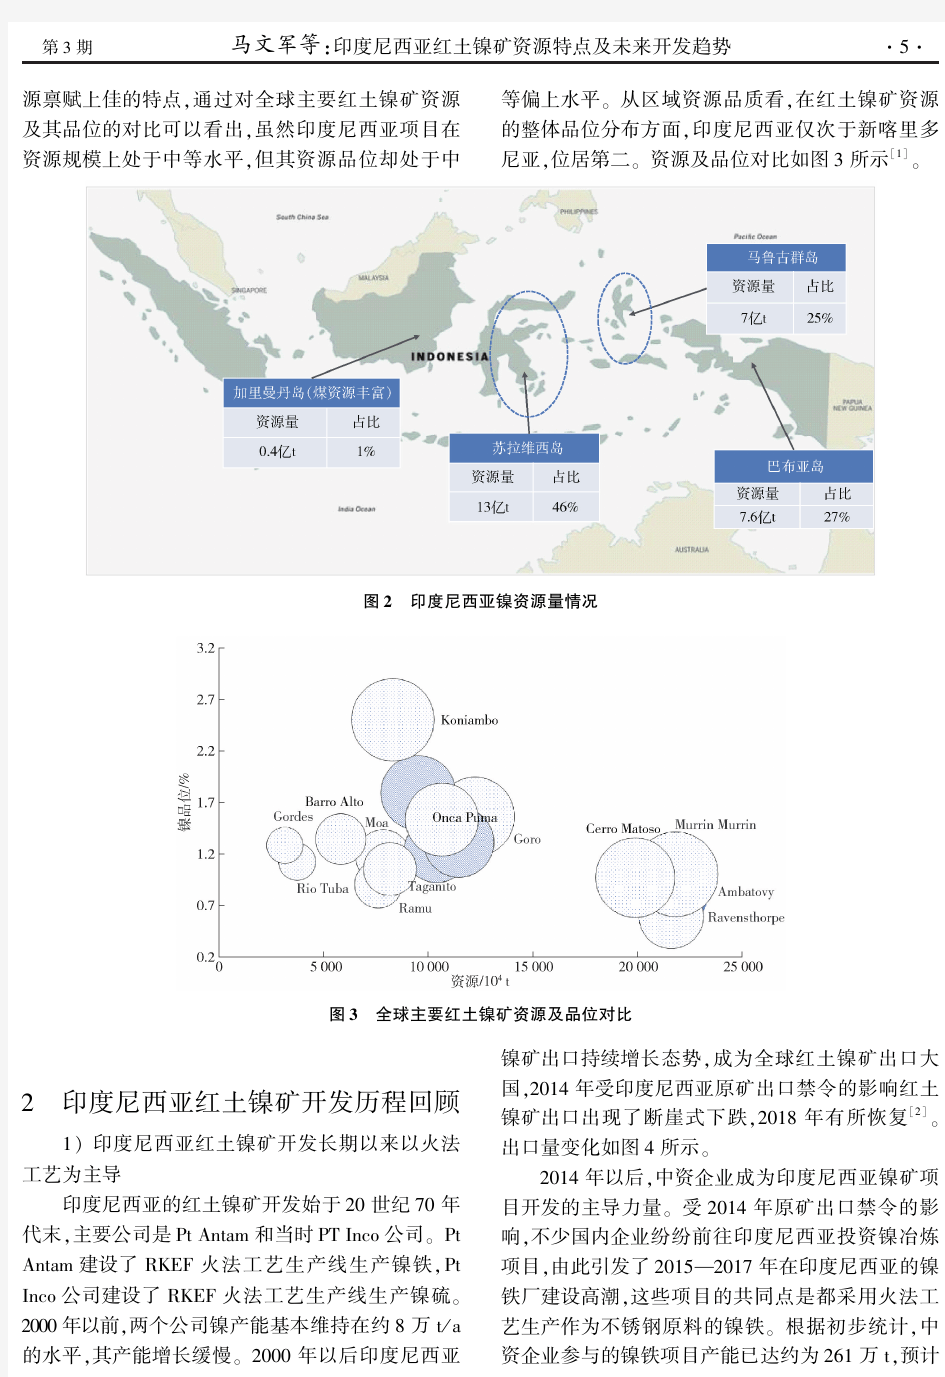 印度尼西亚红土镍矿资源特点及未来开发趋势